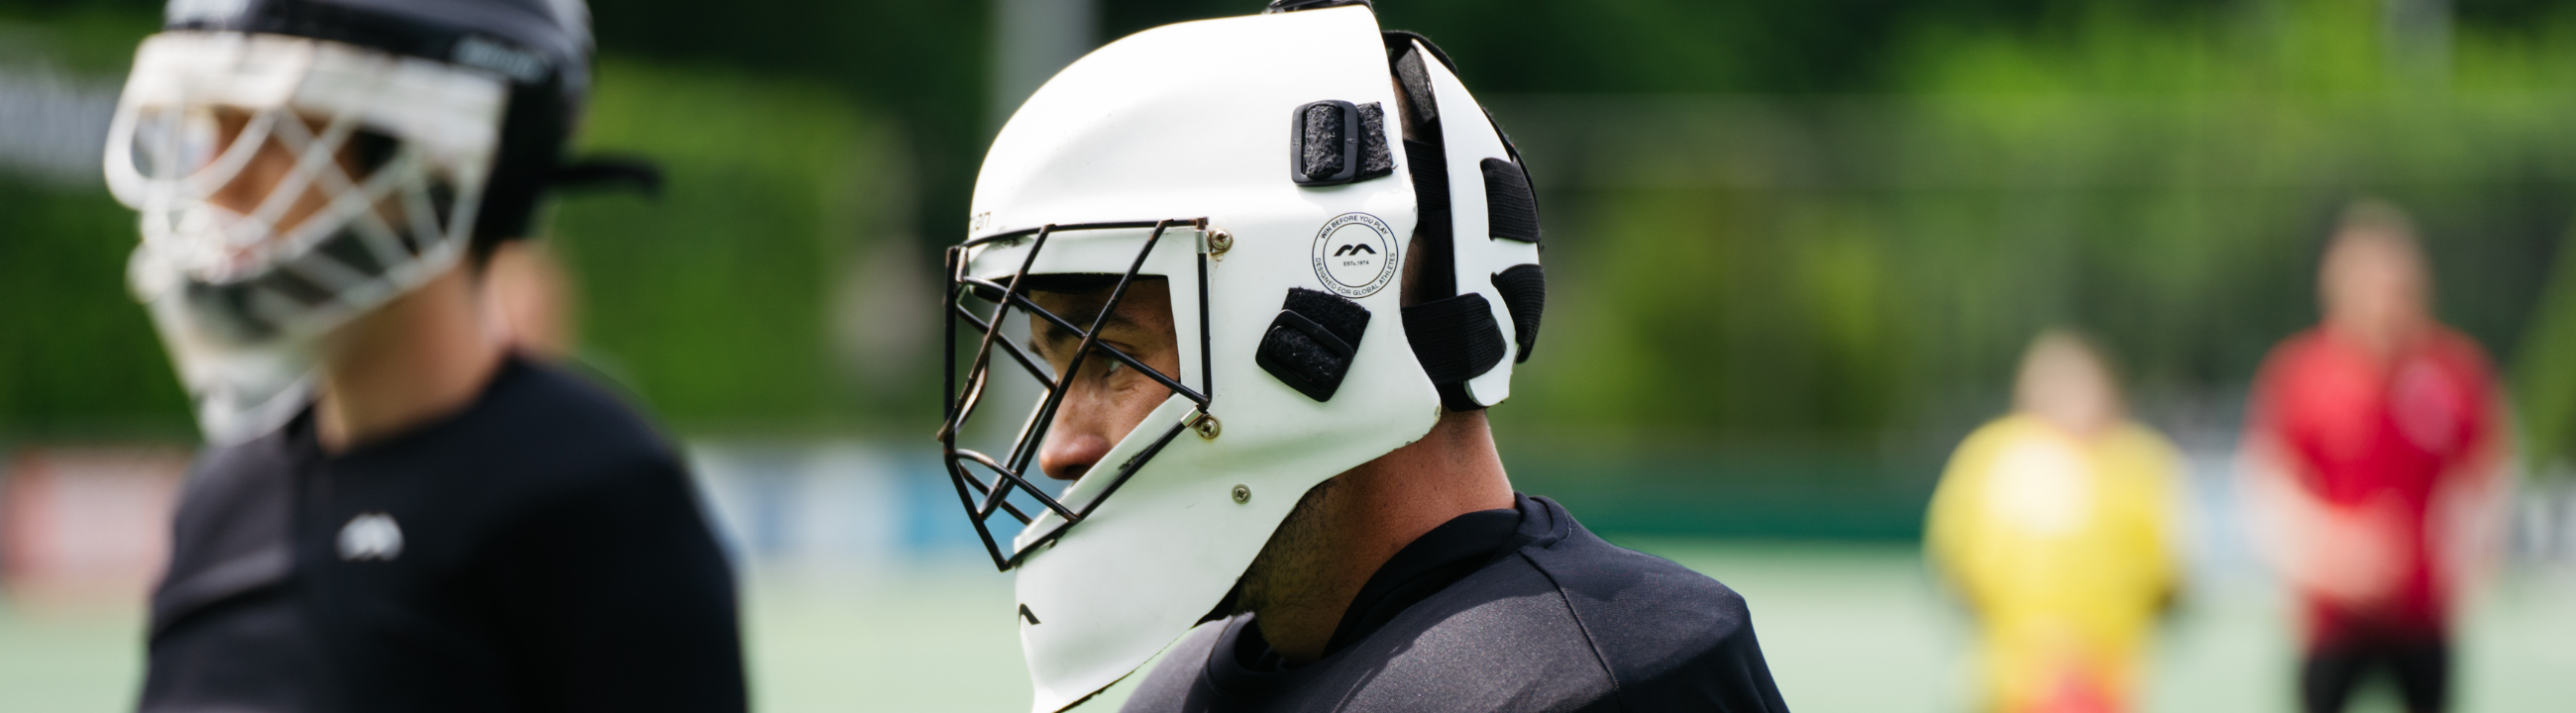 Goalkeeping Helmet Accessories